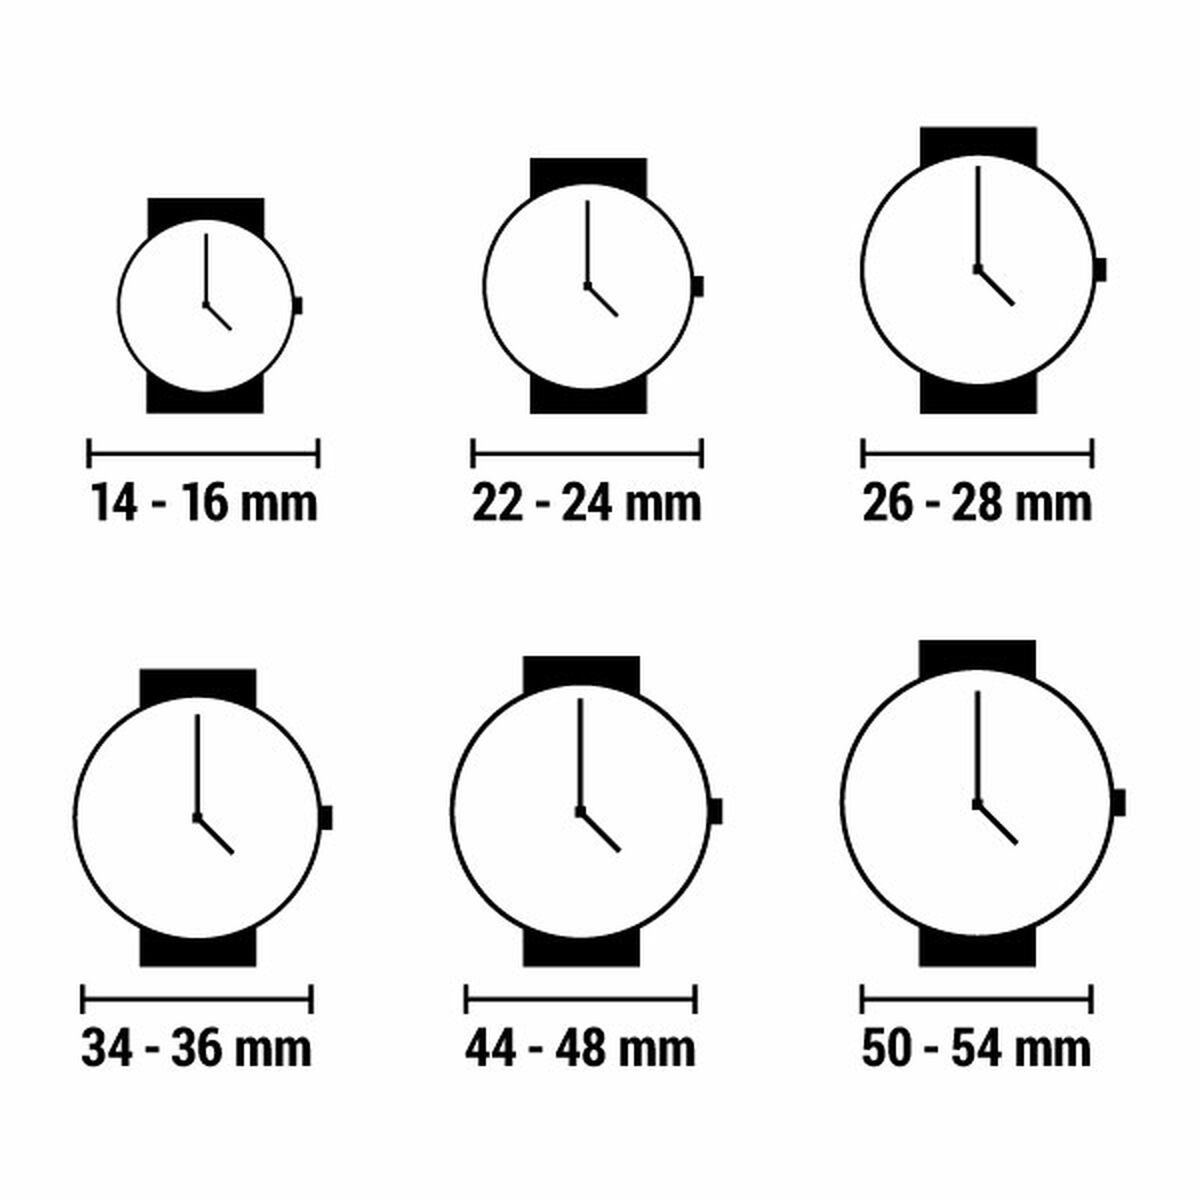 Horloge Dames Versace Versus VSPCA4821 (Ø 38 mm)